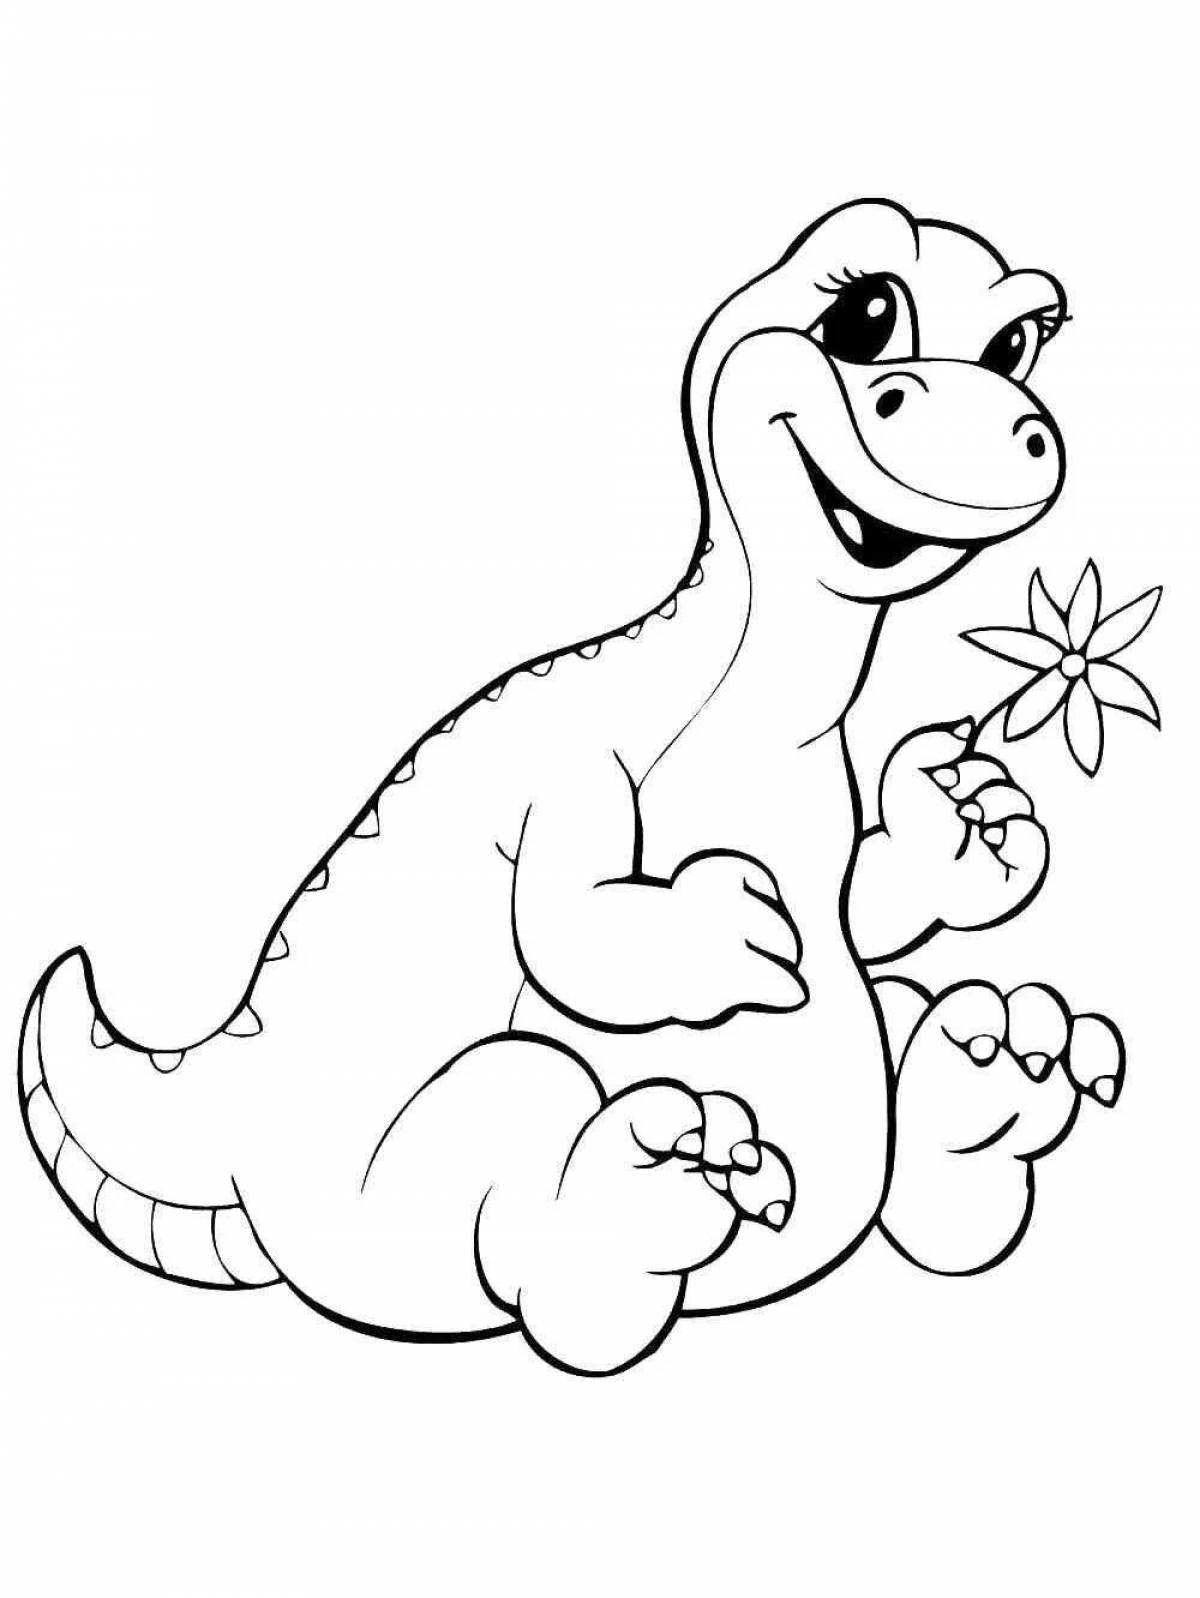 Динозавр раскраска распечатать а4. Динозавры / раскраска. Раскраска "Динозаврики". Динозавр раскраска для детей. Раскраска Динозаврики для малышей.